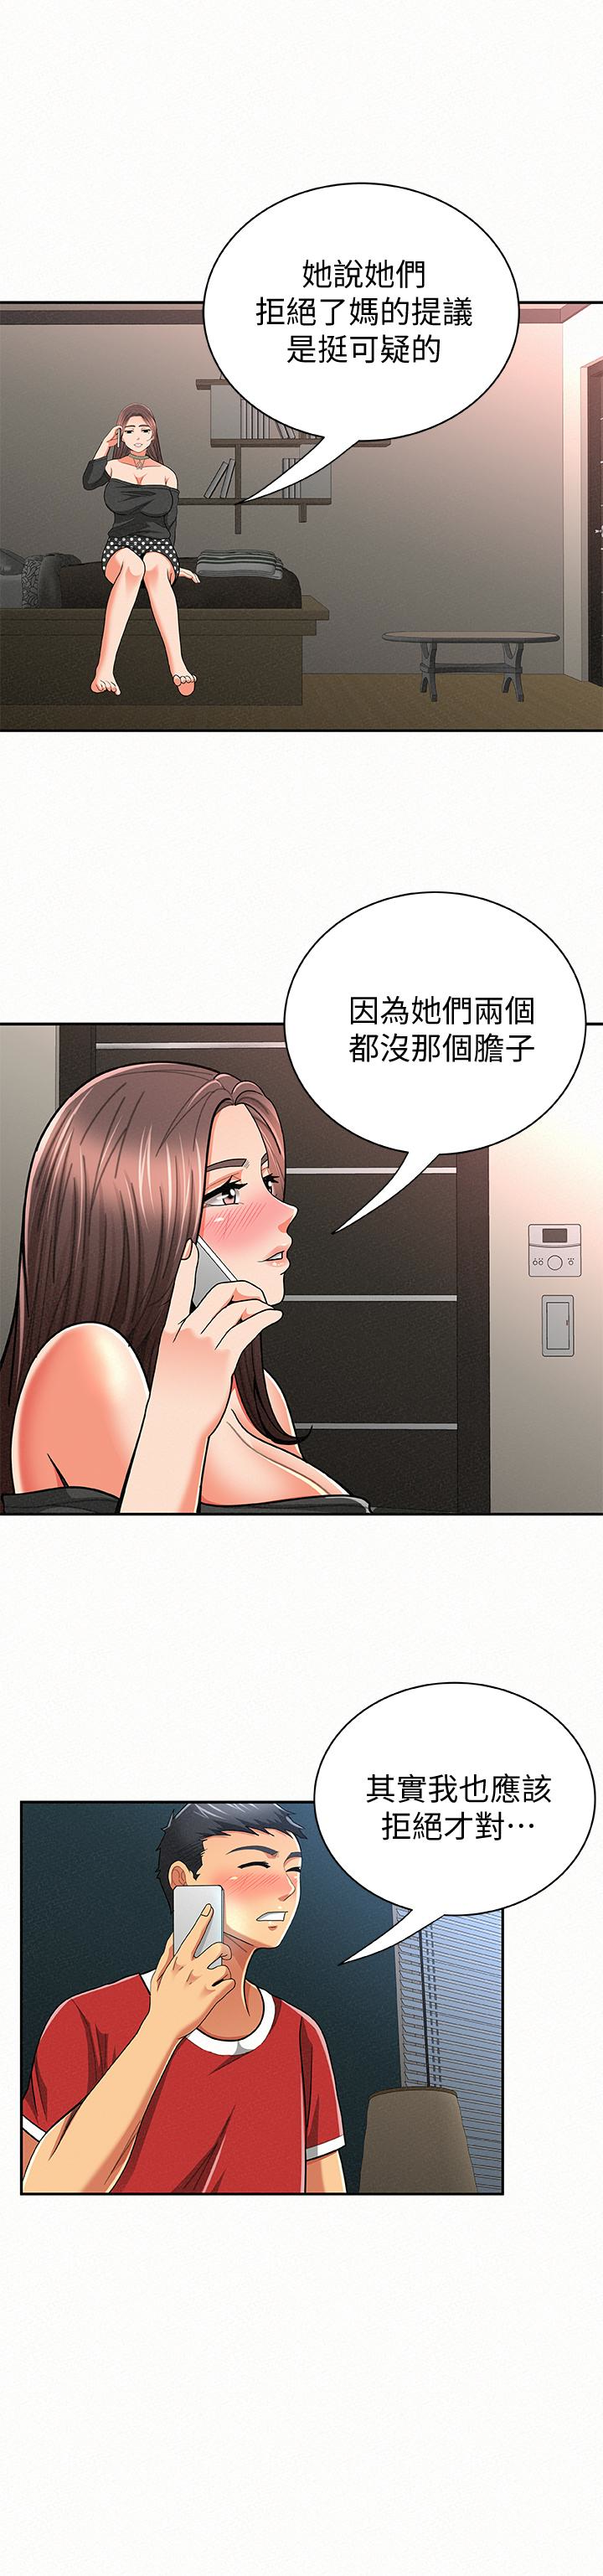 韩国污漫画 報告夫人 第30话-挑逗老公的景淑 10